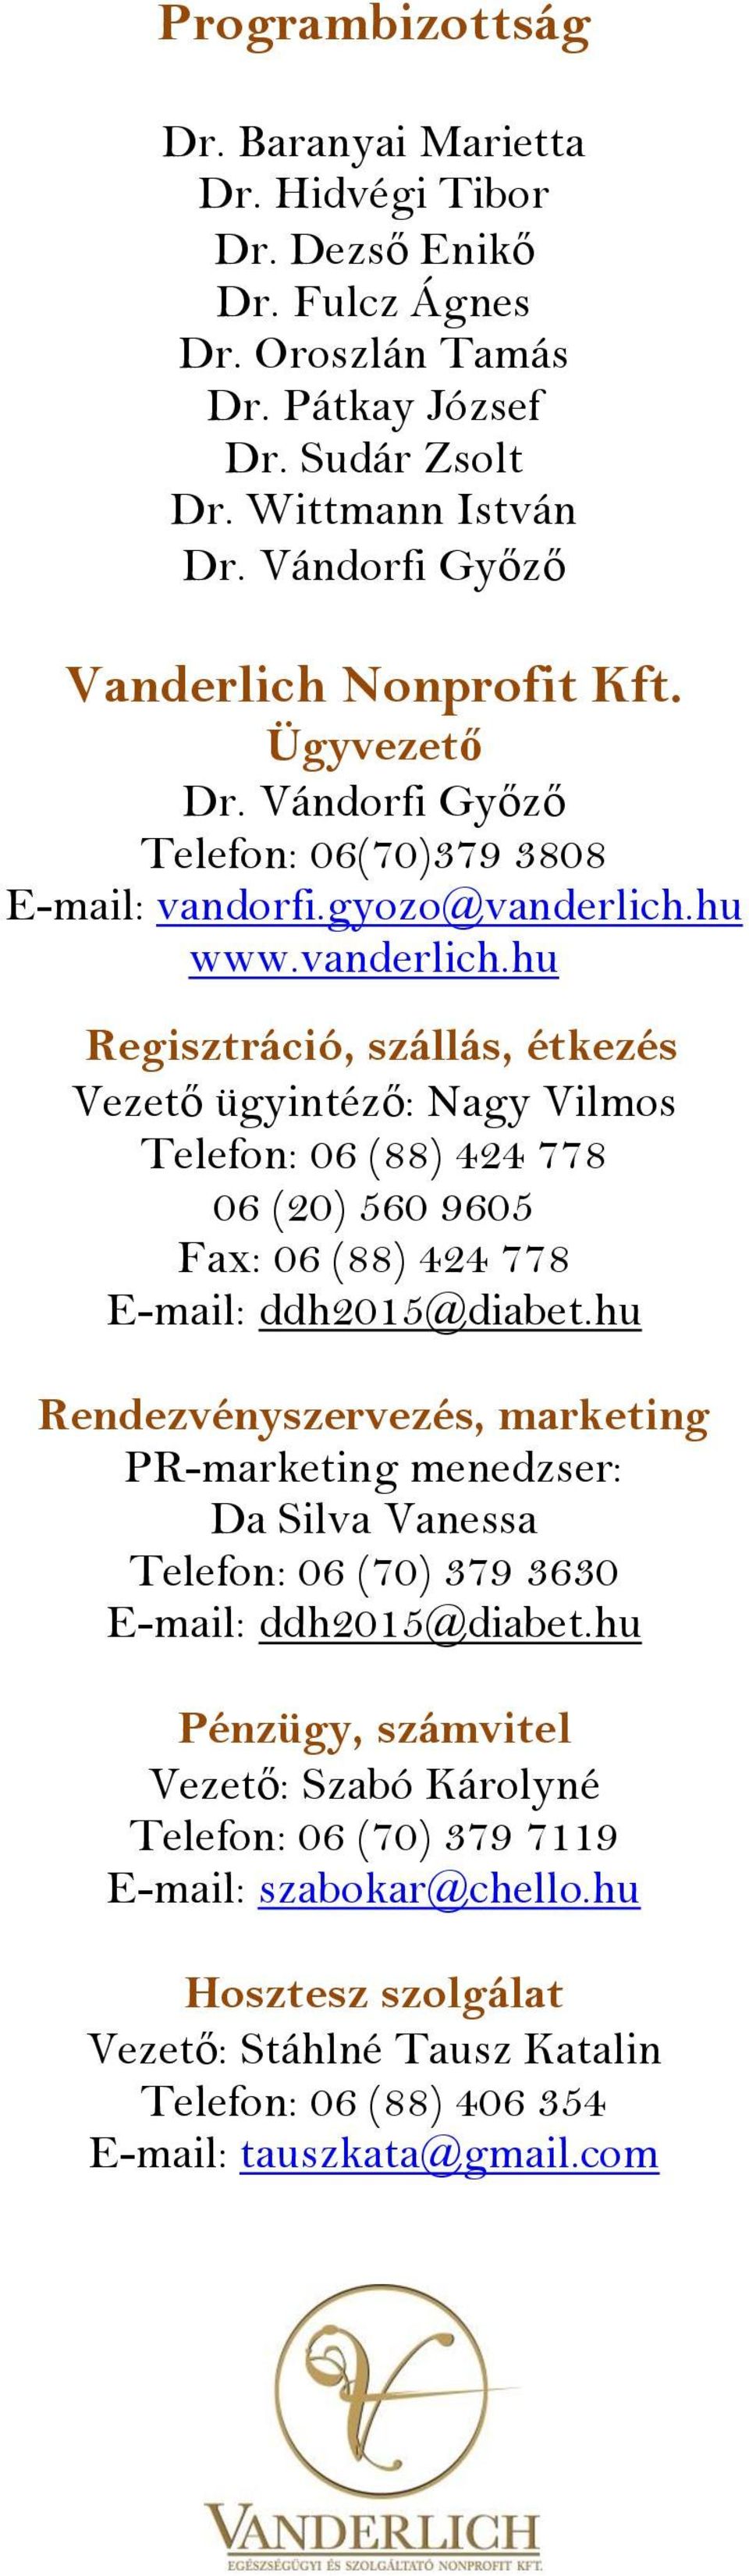 hu www.vanderlich.hu Regisztráció, szállás, étkezés Vezető ügyintéző: Nagy Vilmos Telefon: 06 (88) 424 778 06 (20) 560 9605 Fax: 06 (88) 424 778 E-mail: ddh2015@diabet.